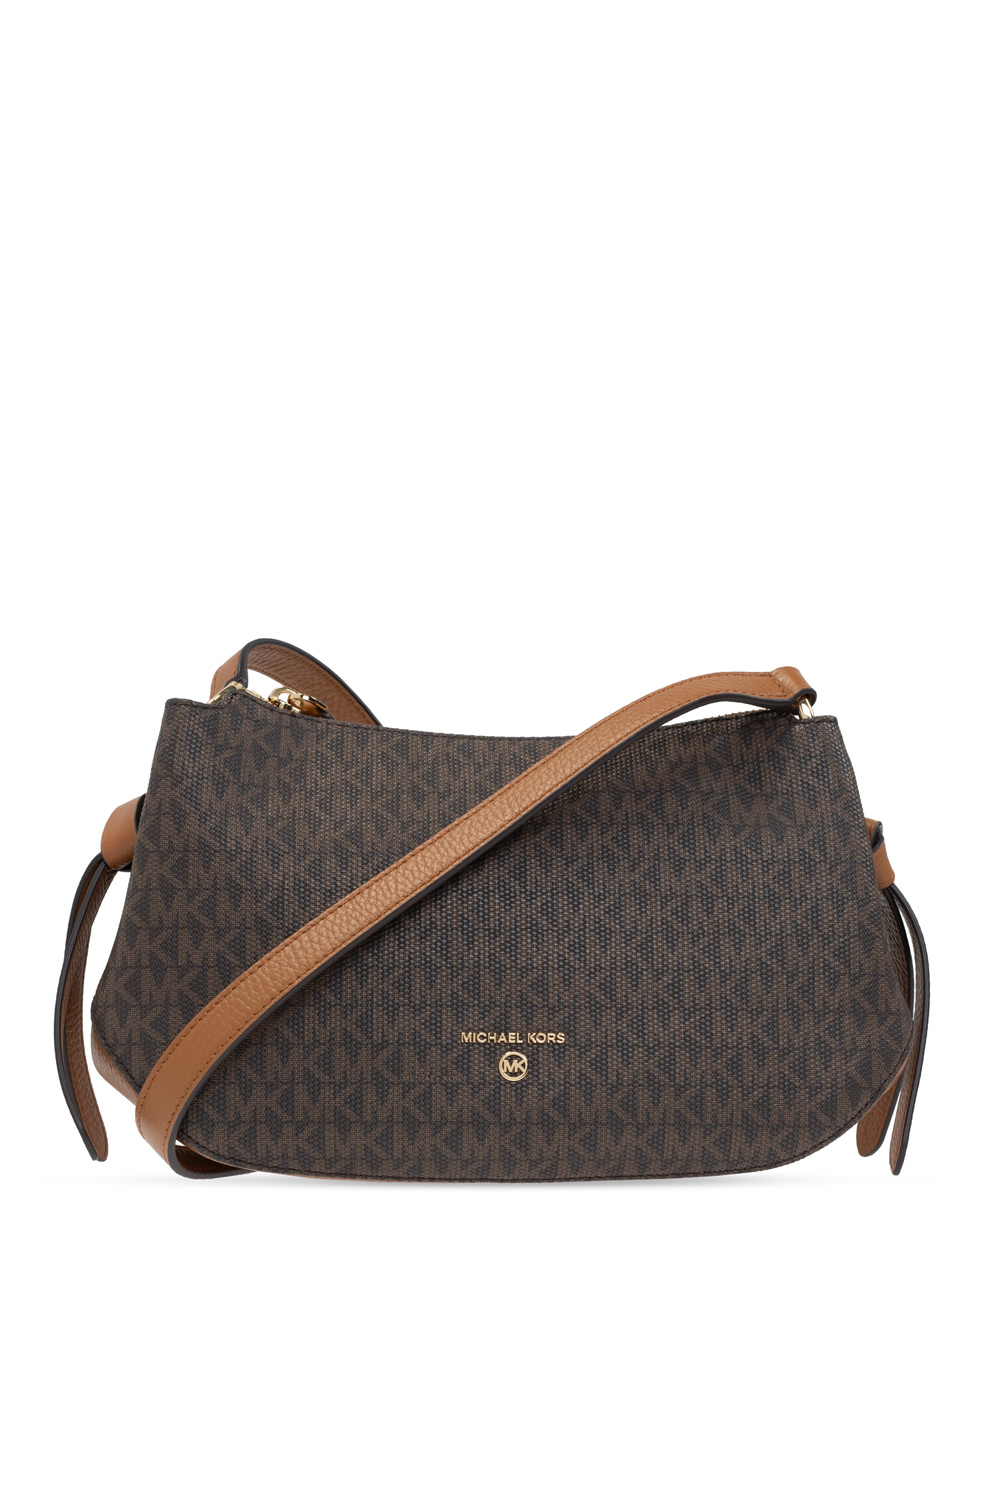 Chlo Daria crocodile-effect top-handle bag | Women's Bags 